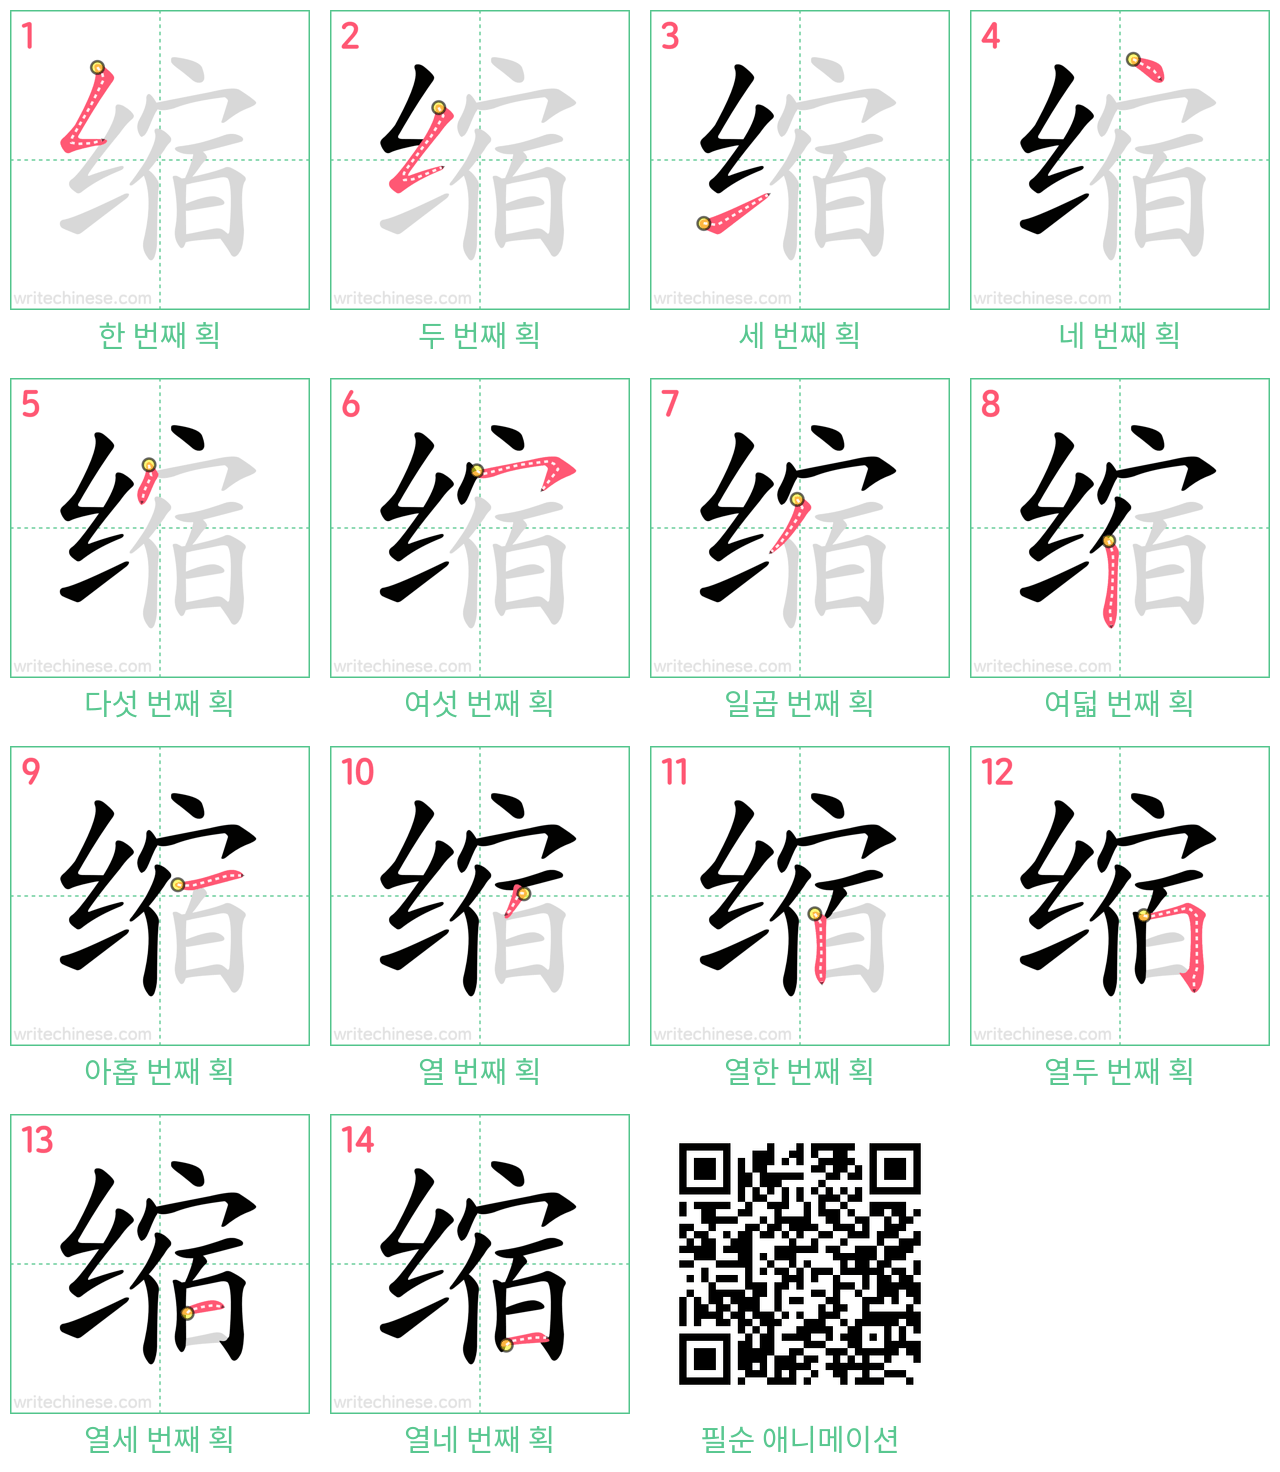 缩 step-by-step stroke order diagrams